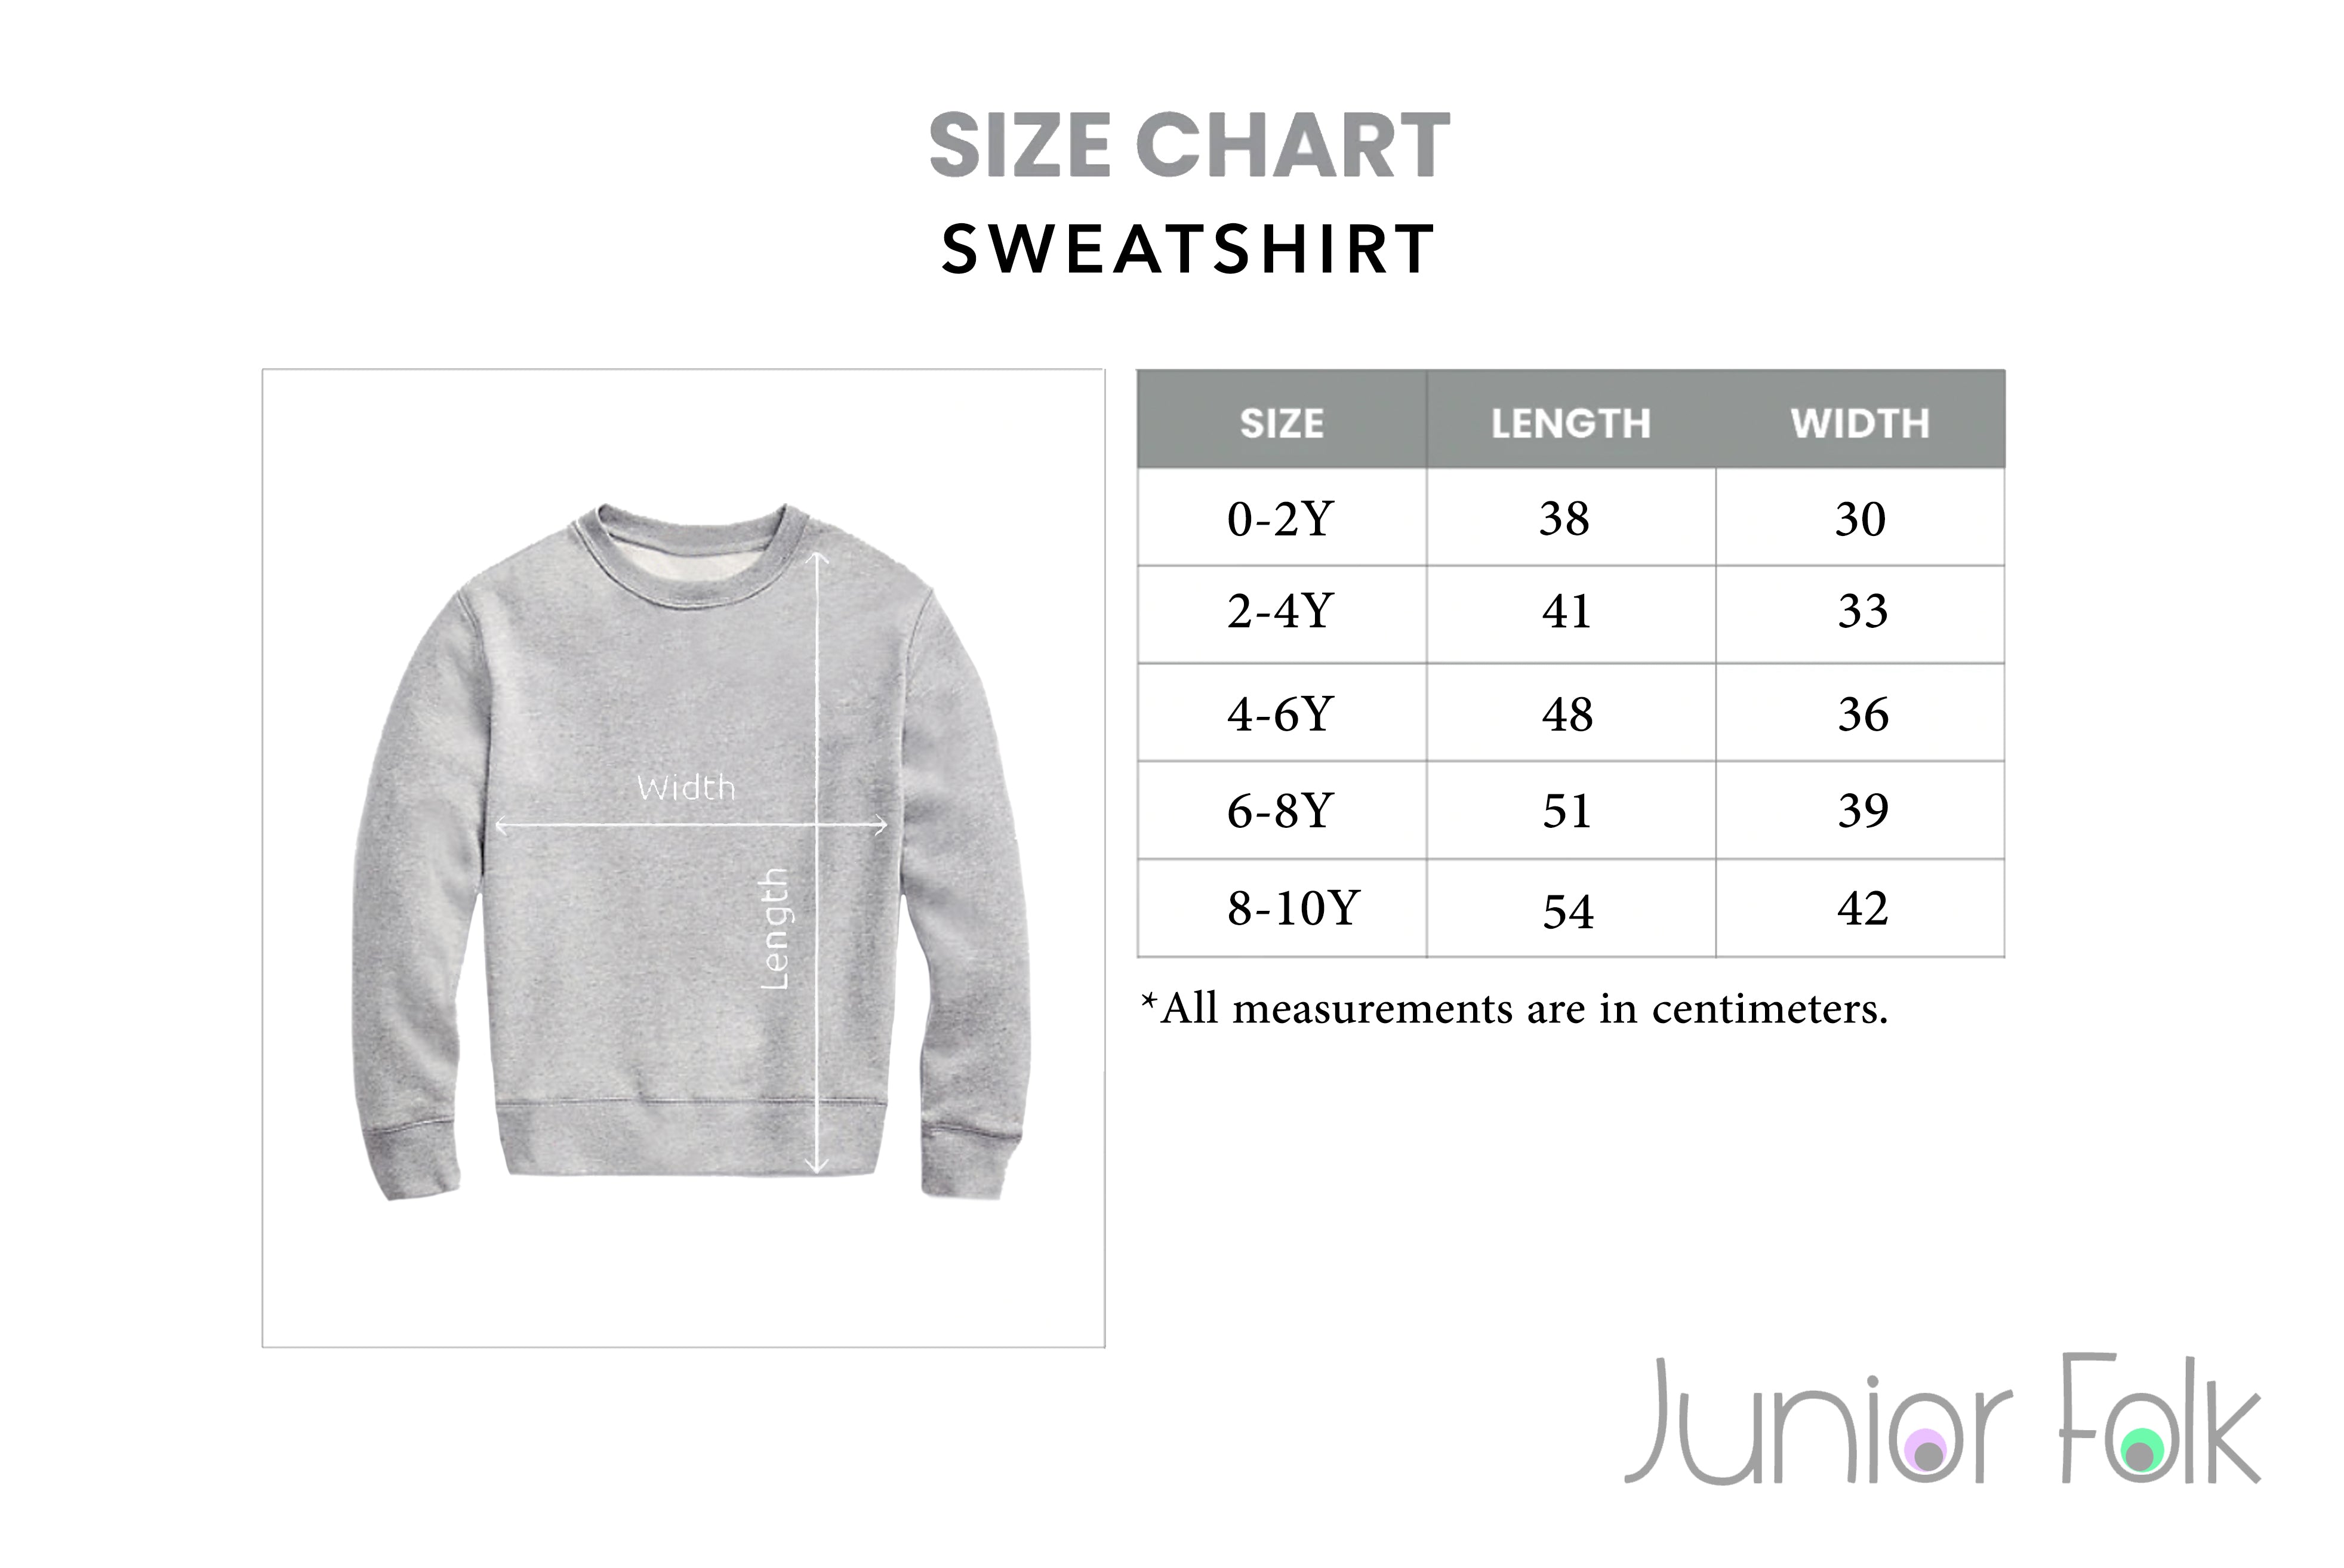 Size Chart for Sweatshirt